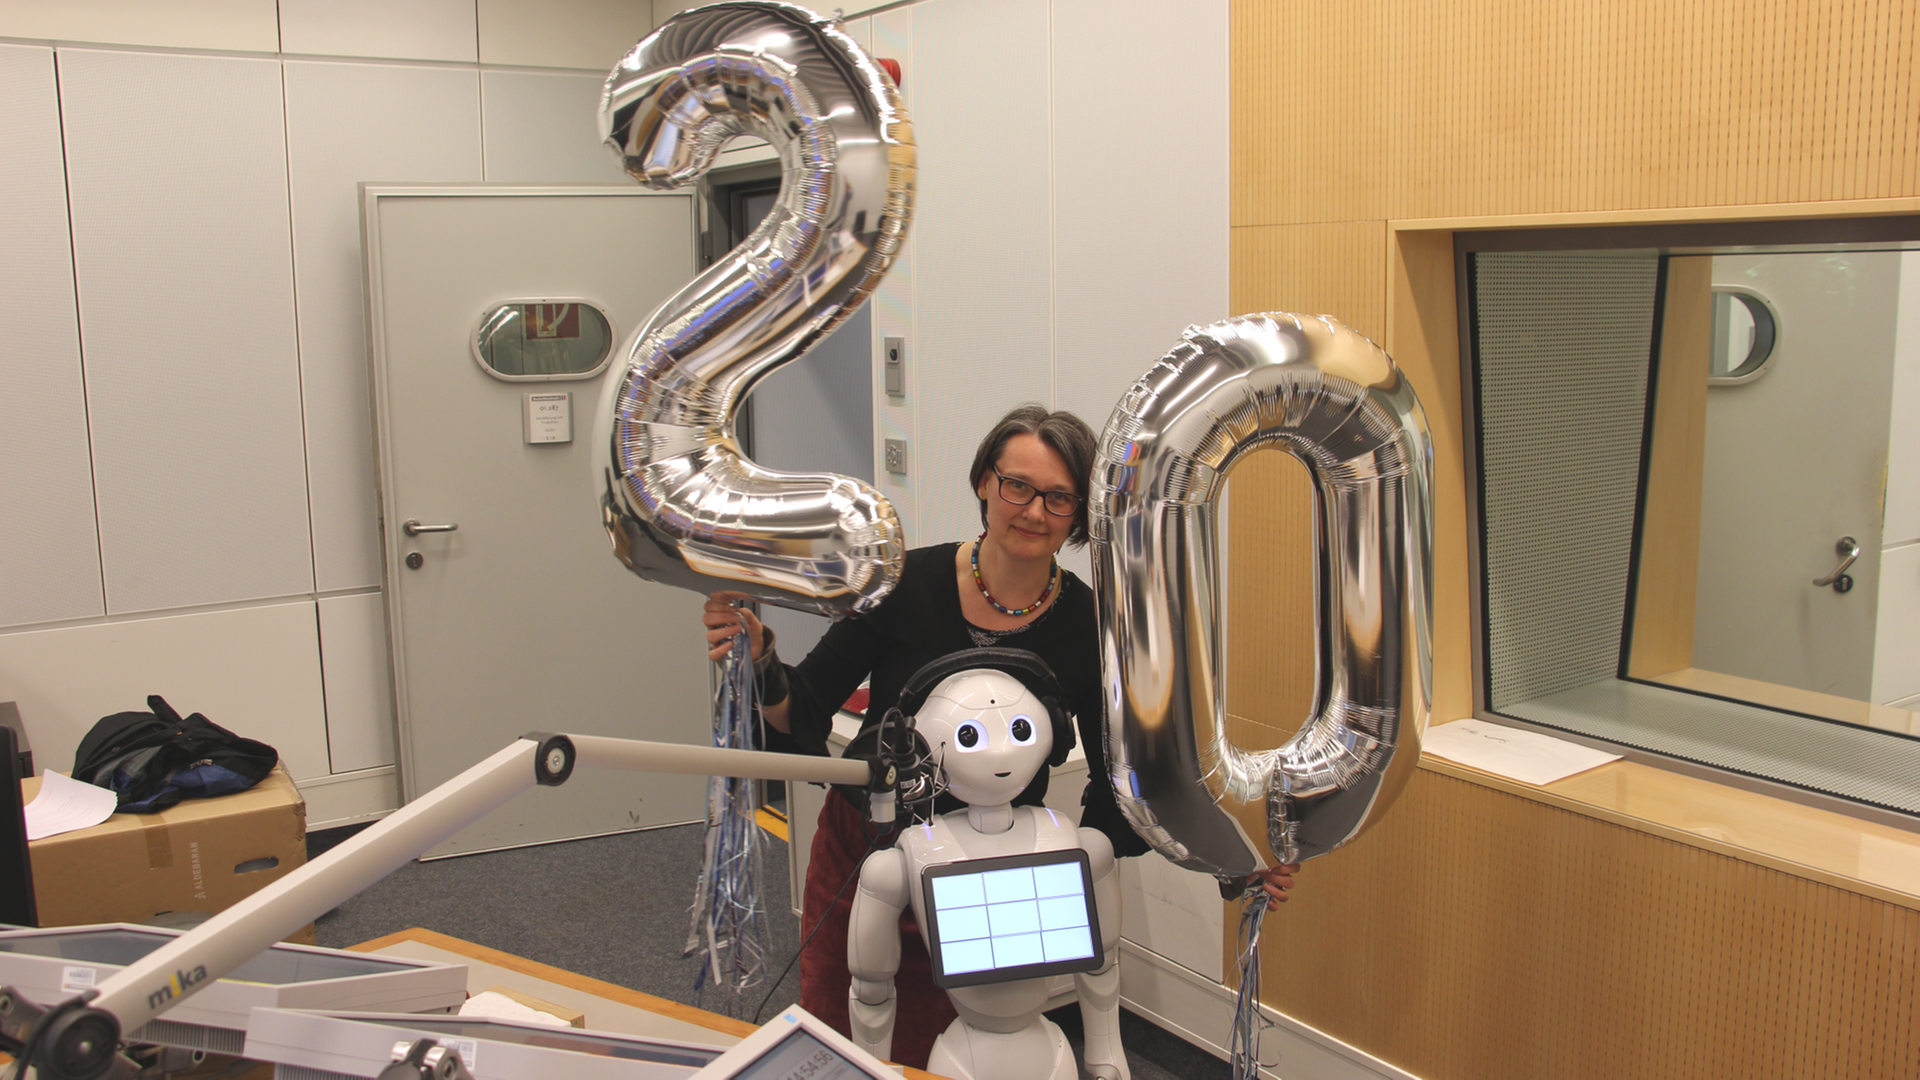 Eine Frau und ein kleiner weißer Roboter stehen im Sendestudio, die Frau hält zwei Ballons in Form einer "20" in den Händen.